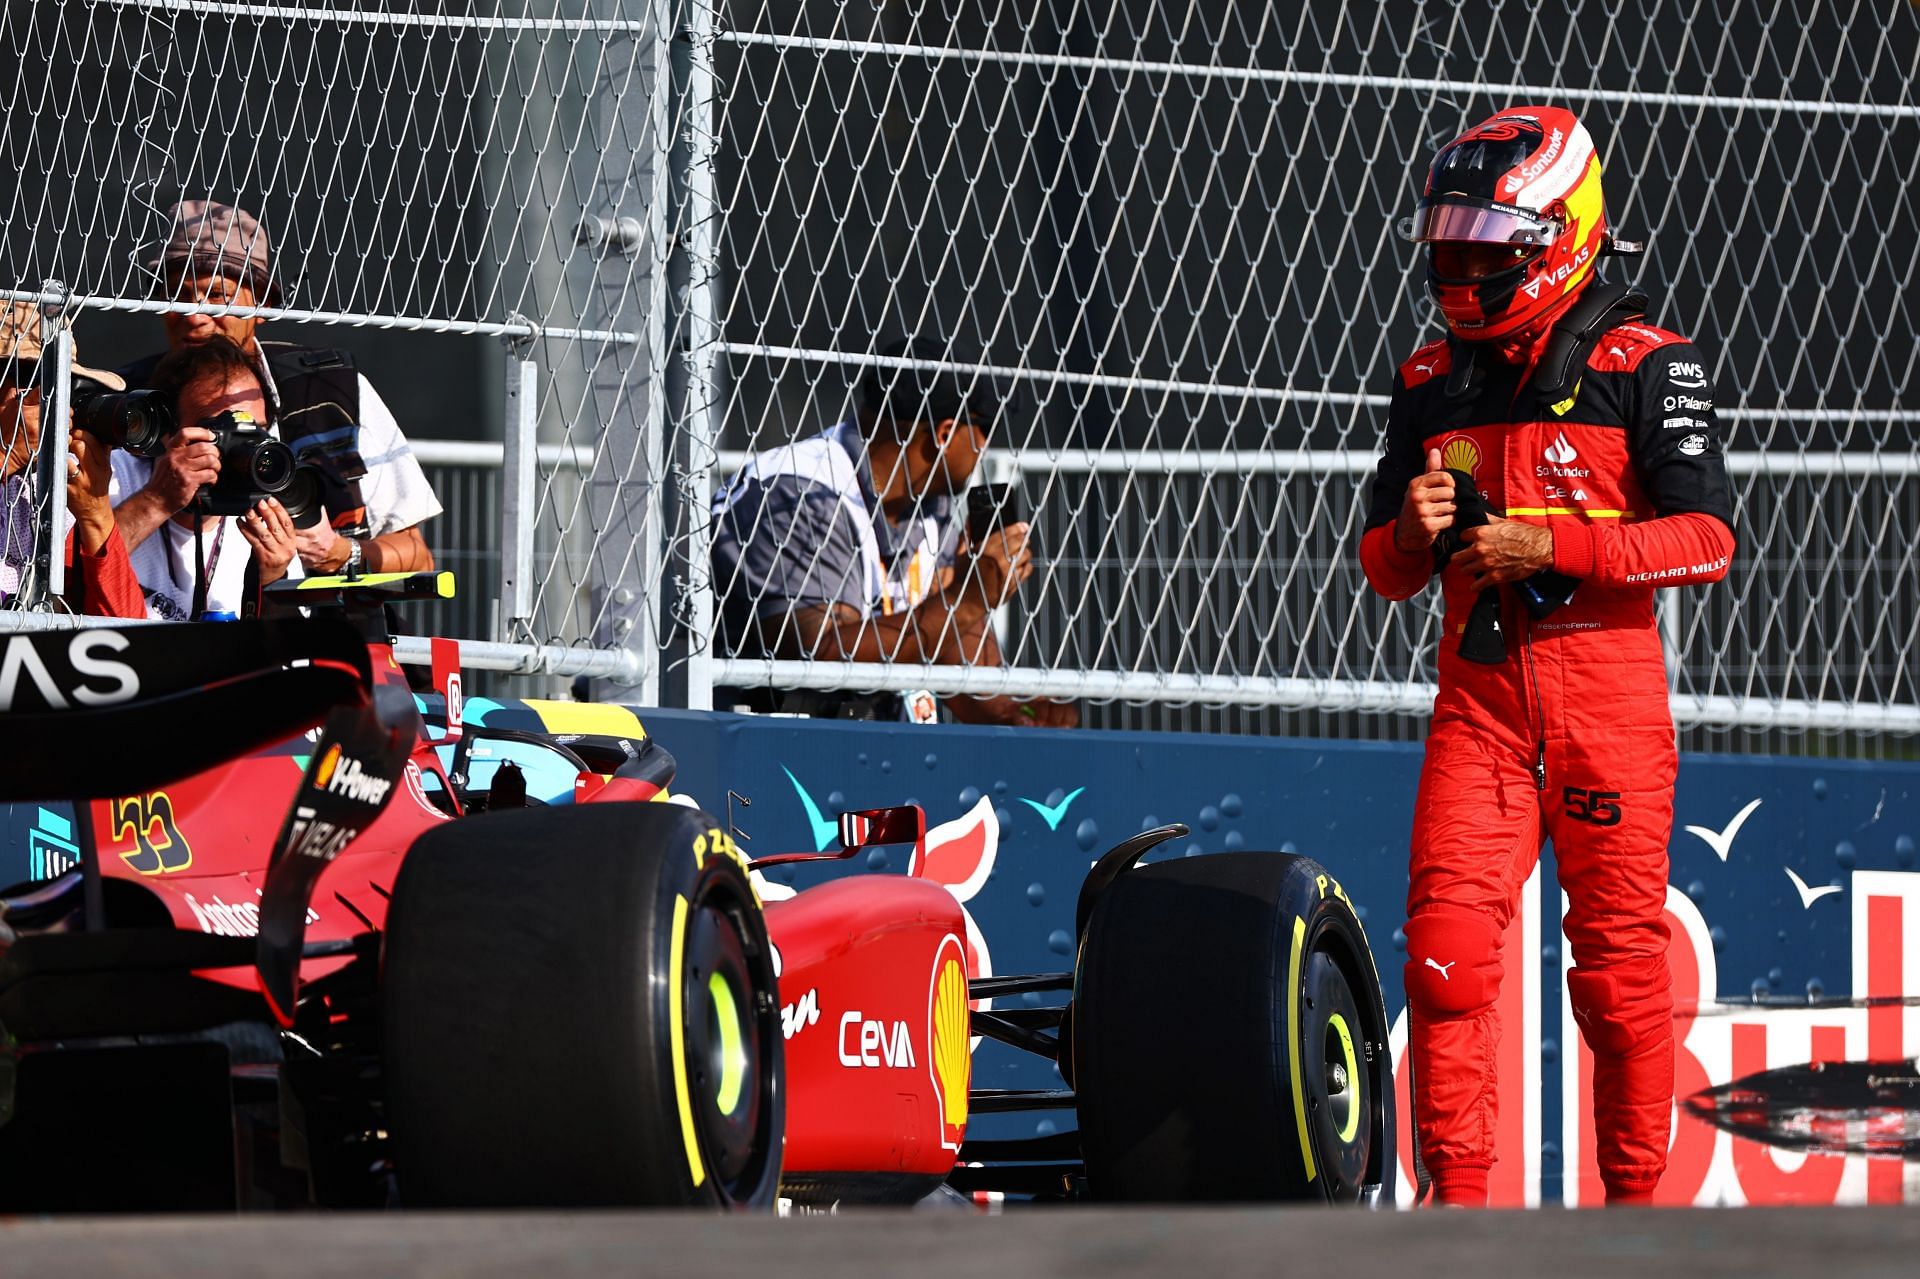 Carlos Sainz at the F1 Grand Prix of Miami - Practice